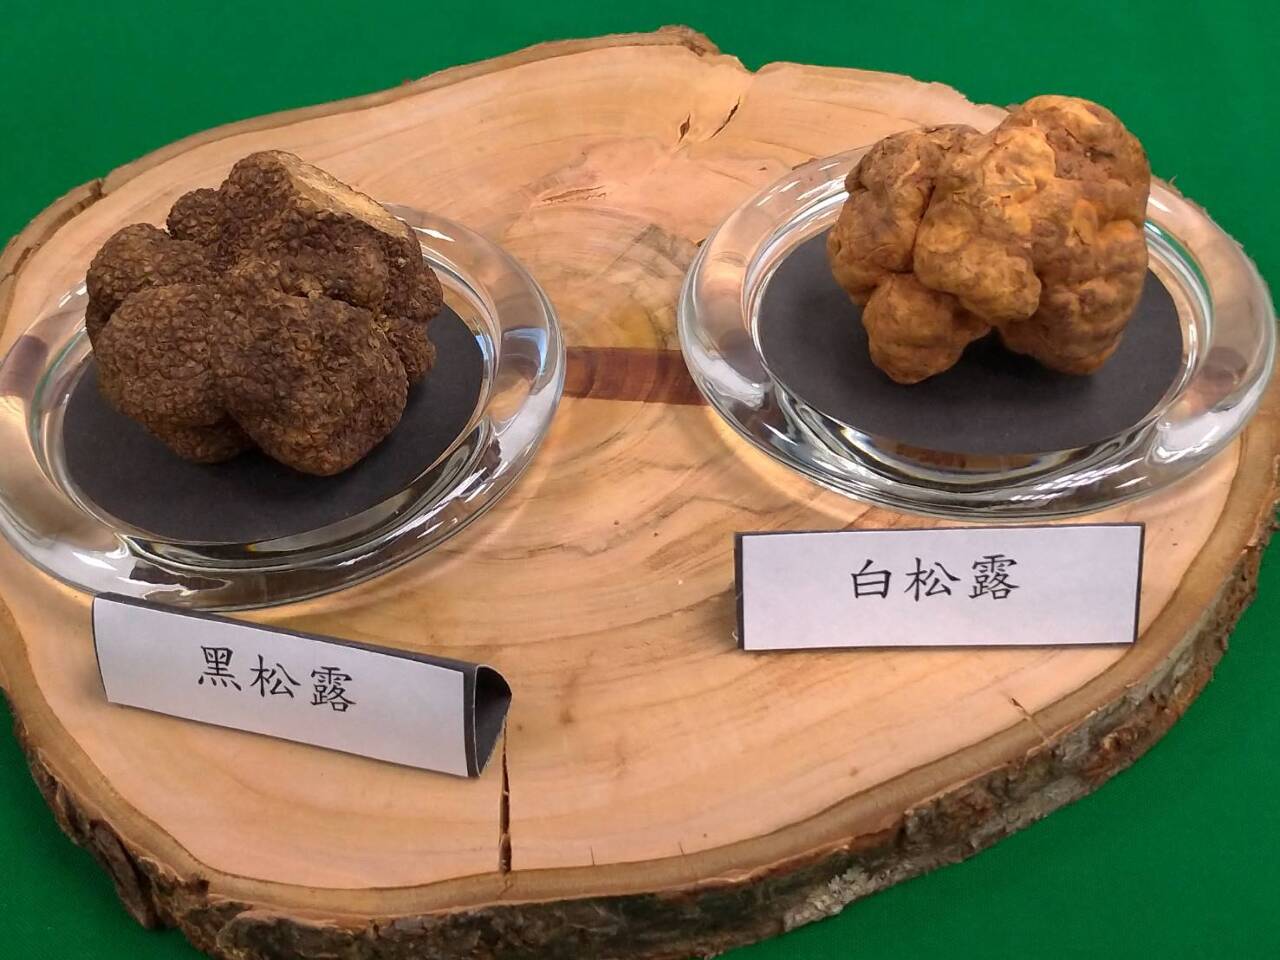 Dernière découverte de truffes blanches à Taïwan